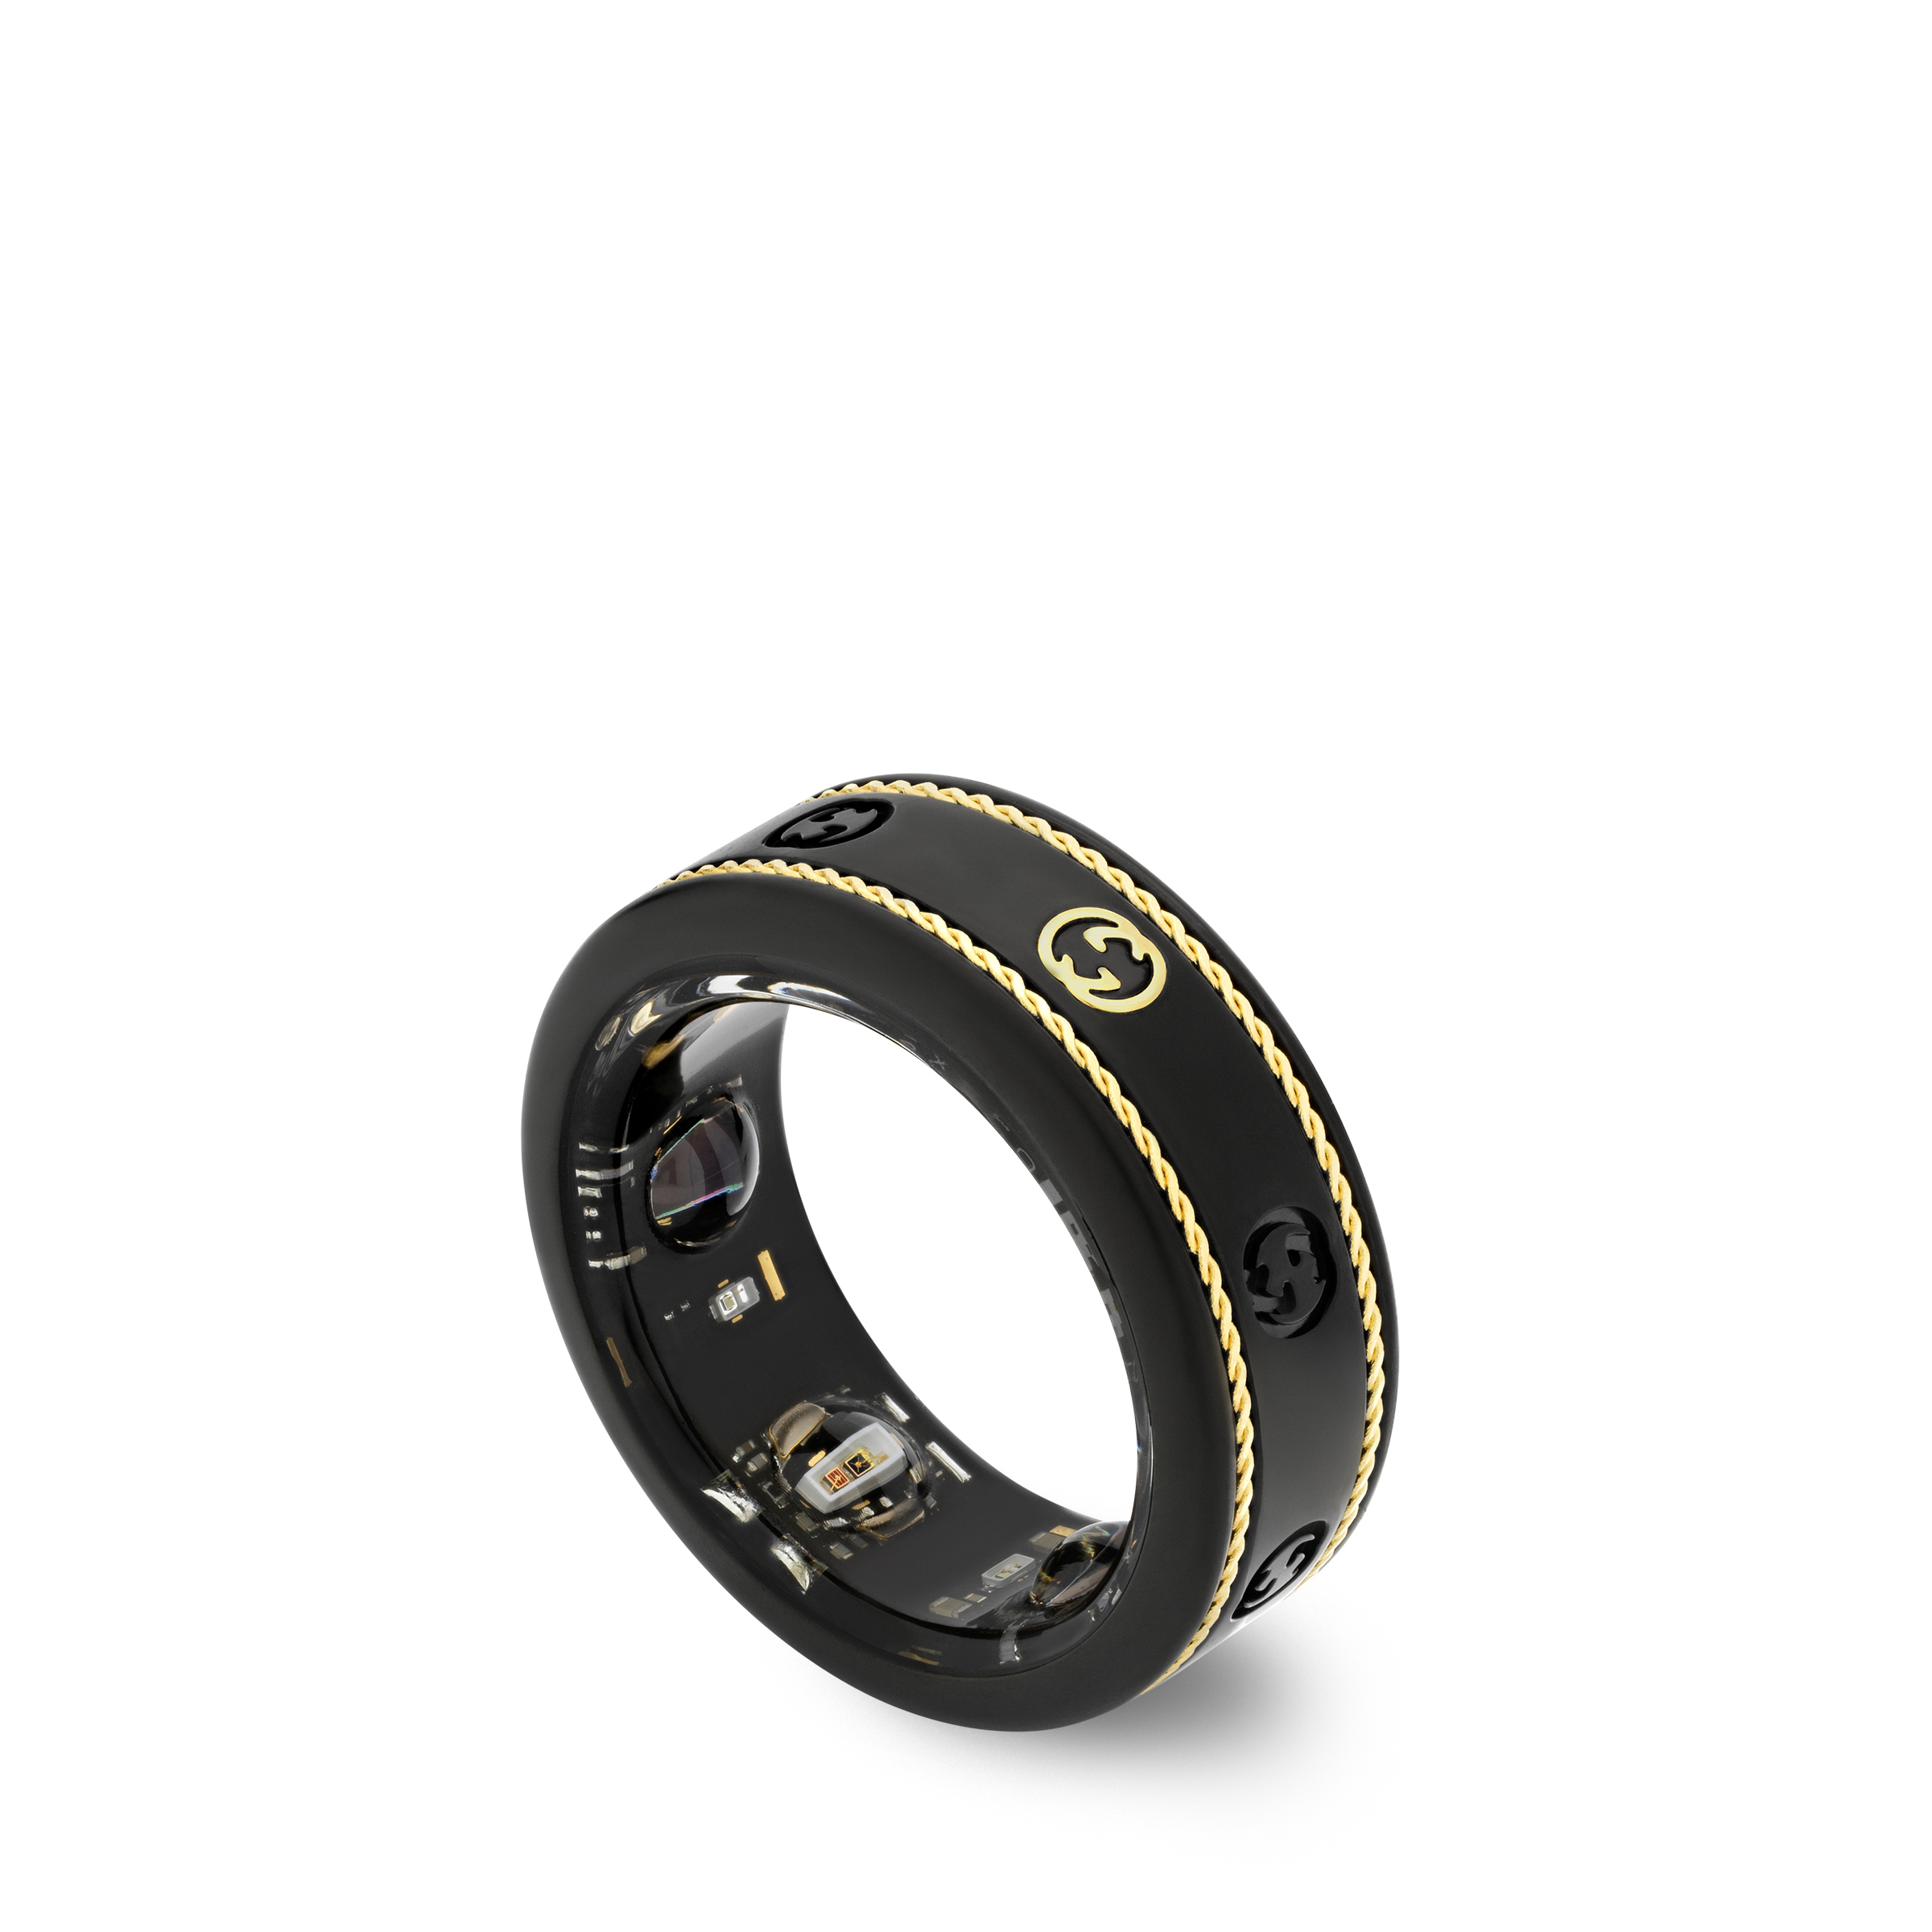 Gucci x Oura lanzó un anillo inteligente de $ 950 para ayudarlo a descubrirse a sí mismo – TechCrunch